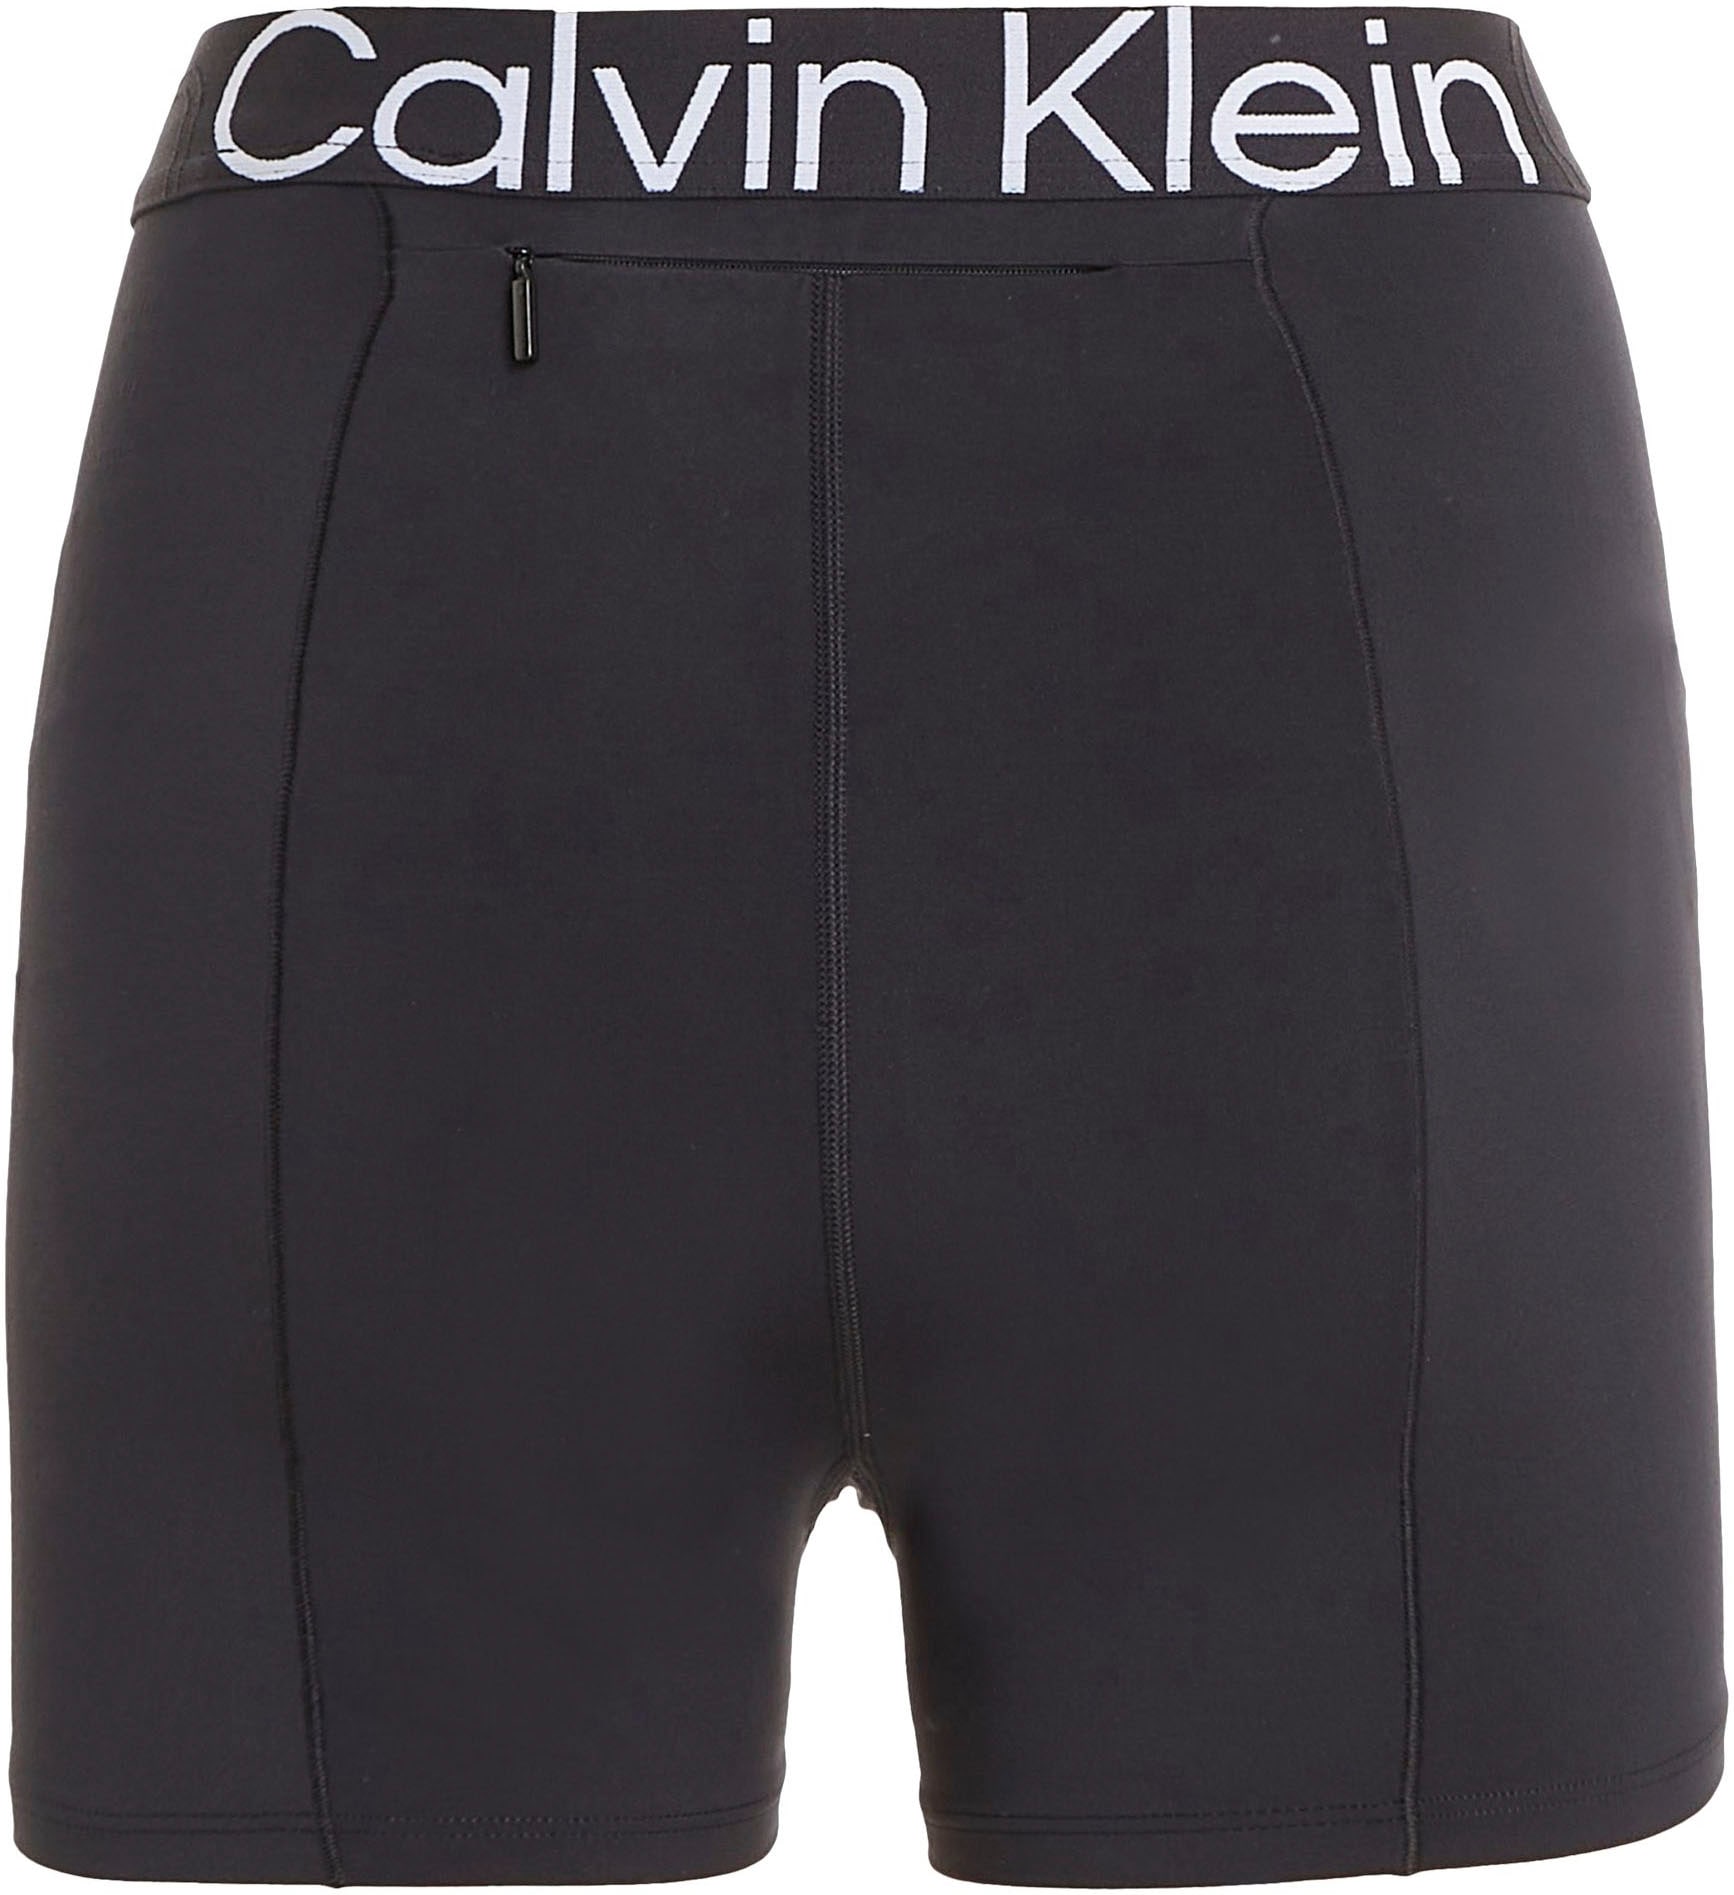 Entdecke Calvin Klein auf Sport Radlerhose